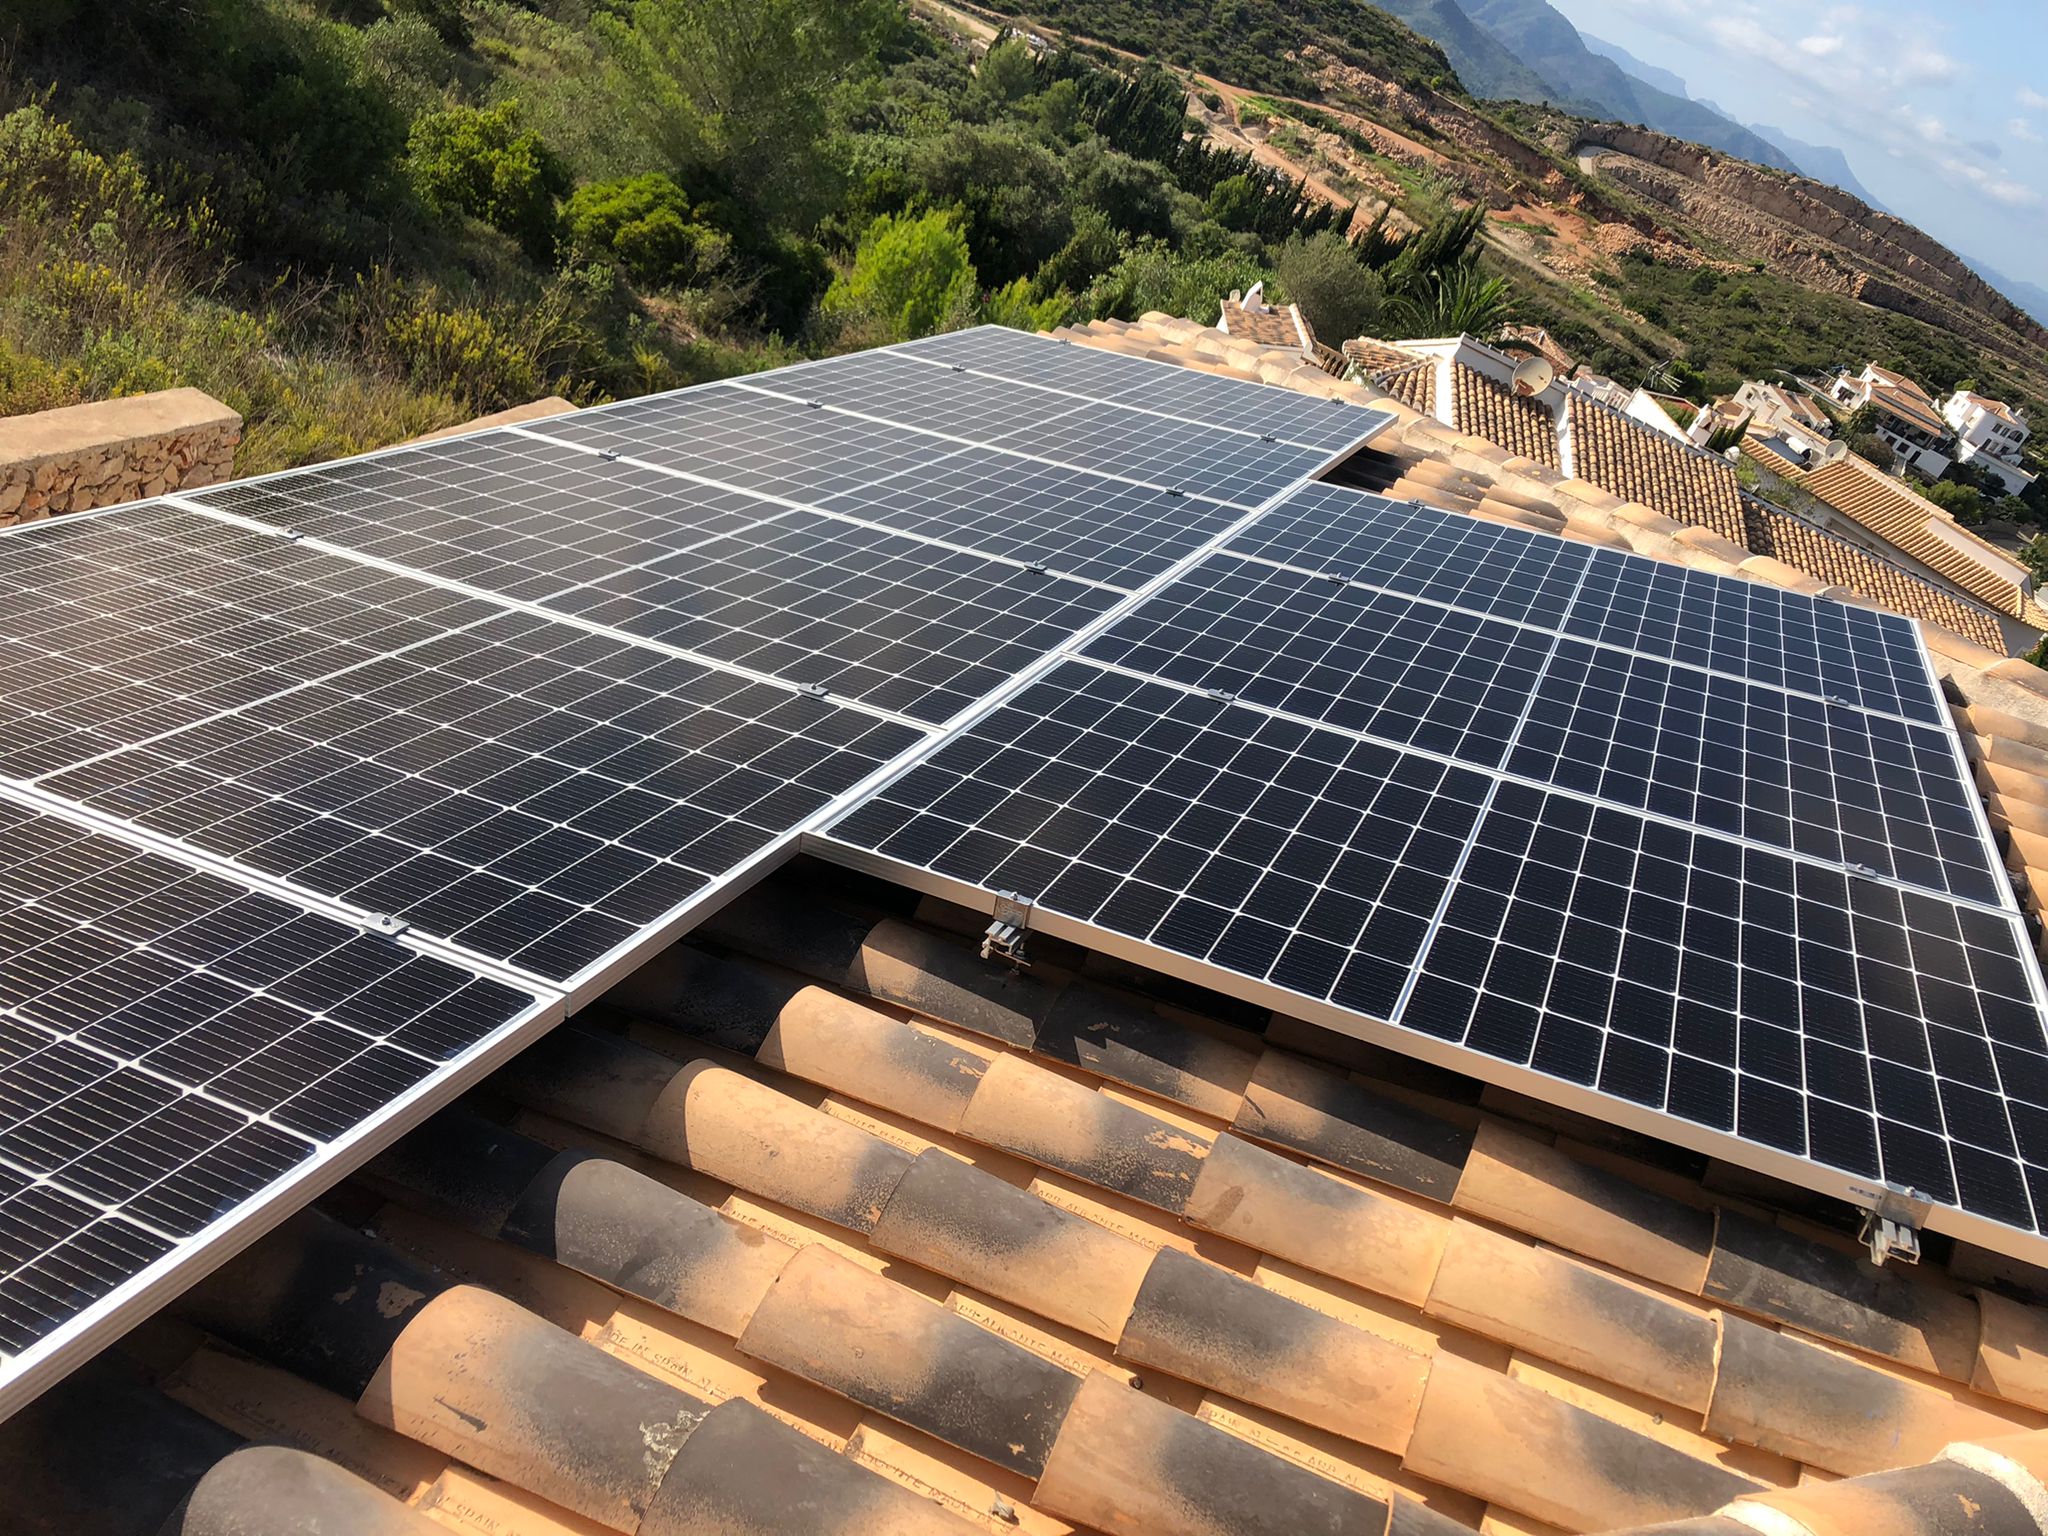 9X 380 wp Solar Panels, El Ràfol dAlmúnia , Alicante (Hybrid system)